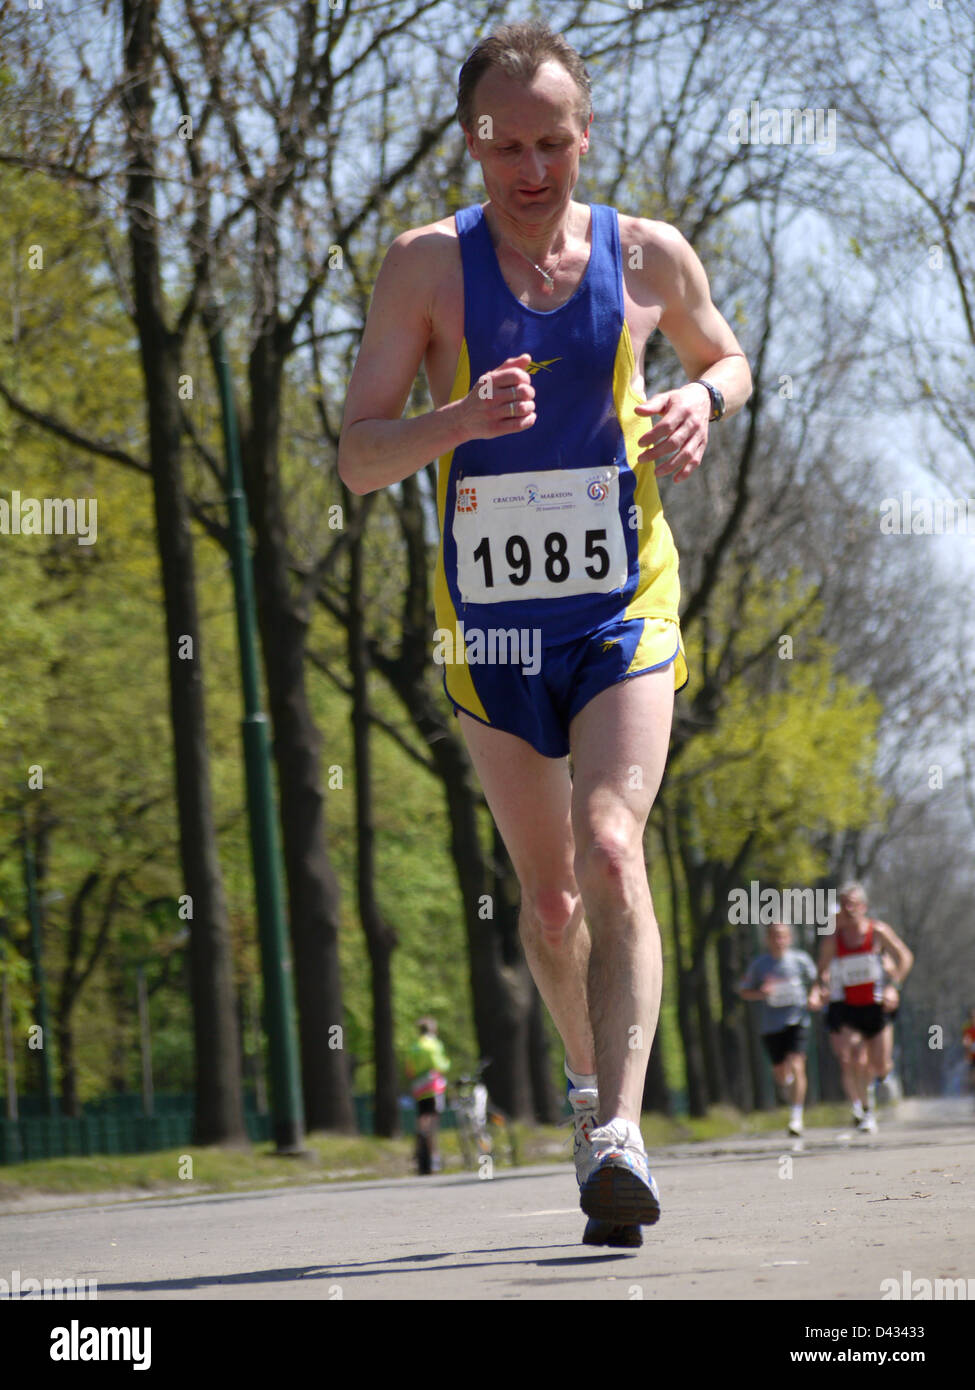 Teilnahme an internationalen Cracovia Marathon, Marathon-Racer jährlich in Krakau, Polen Stockfoto